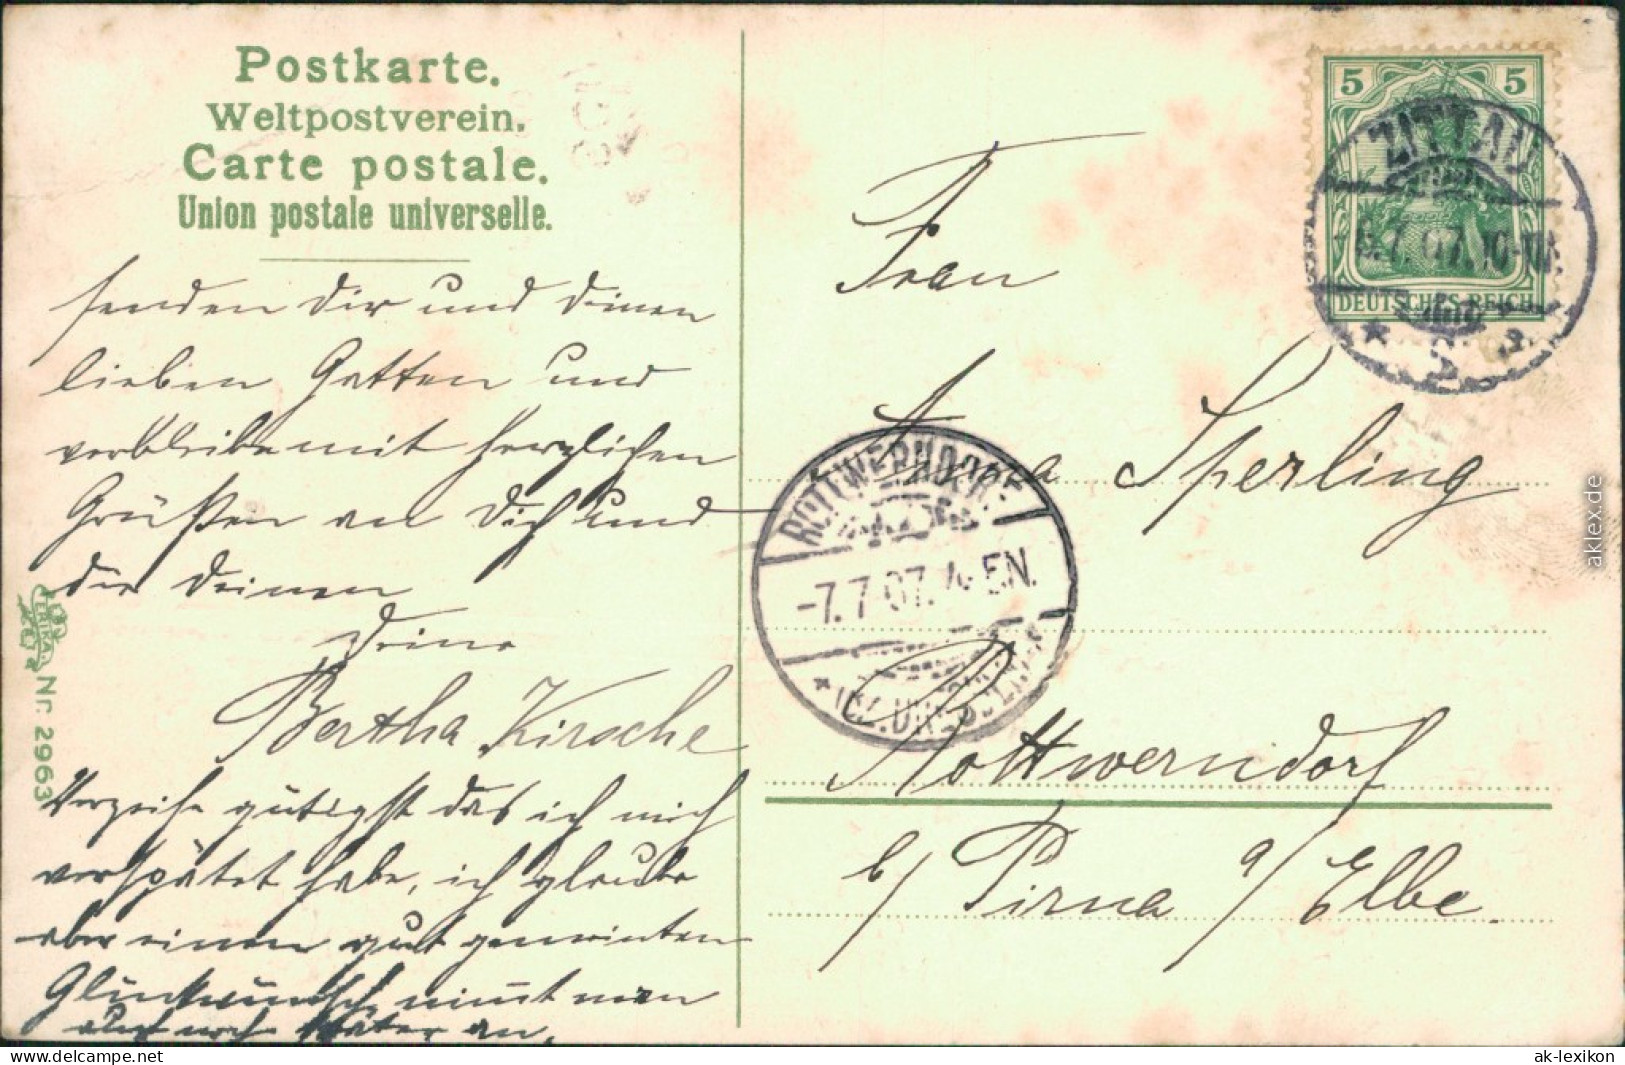  Glückwunsch/Grußkarten: Geburtstag - Blühender Baum 1907 Prägekarte - Birthday